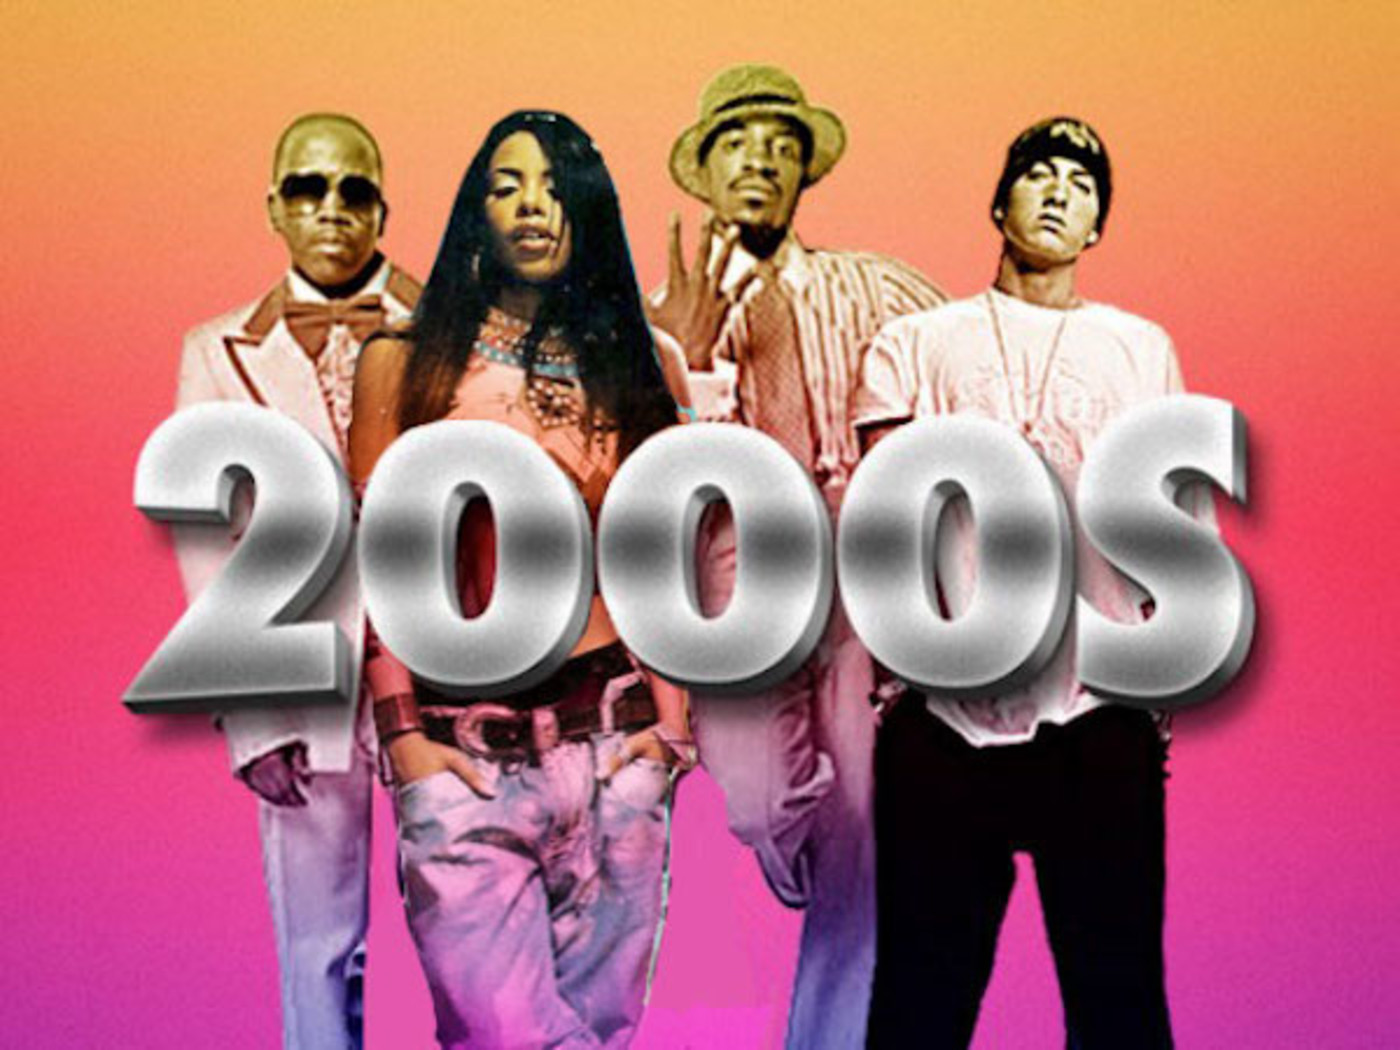 Музыка 00 зарубежные. S2000. 2000s Music. 2000s years. Pop Music 2000s.